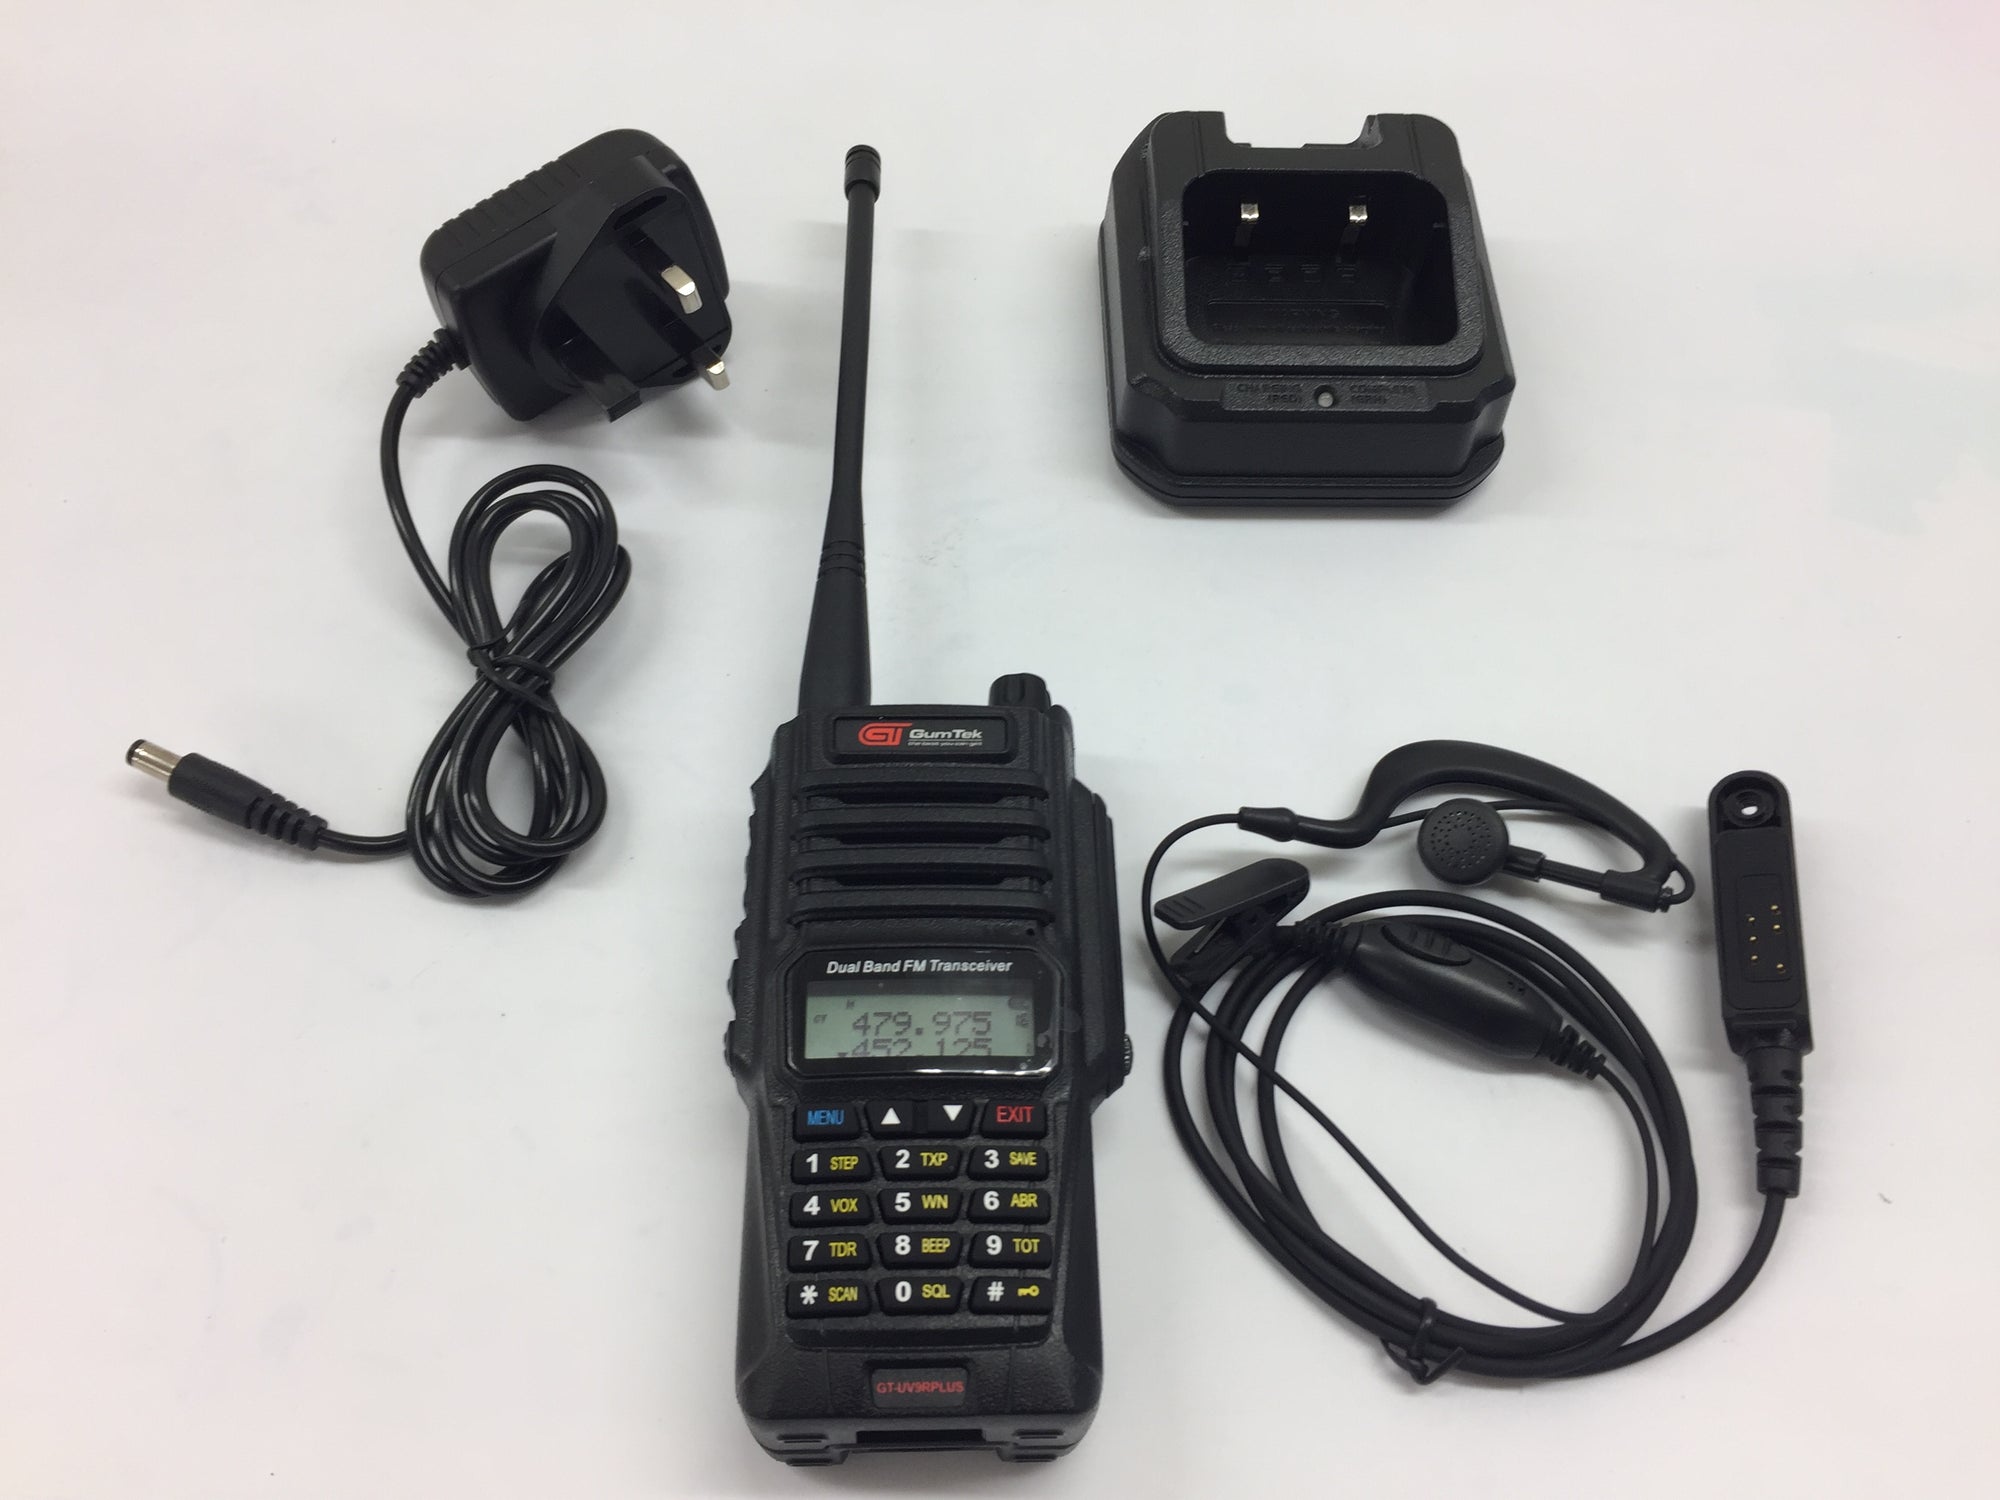 Gumtek UV-9R Plus IP67 Waterproof UHF/VHF Walkie Talkie Two Way Radio